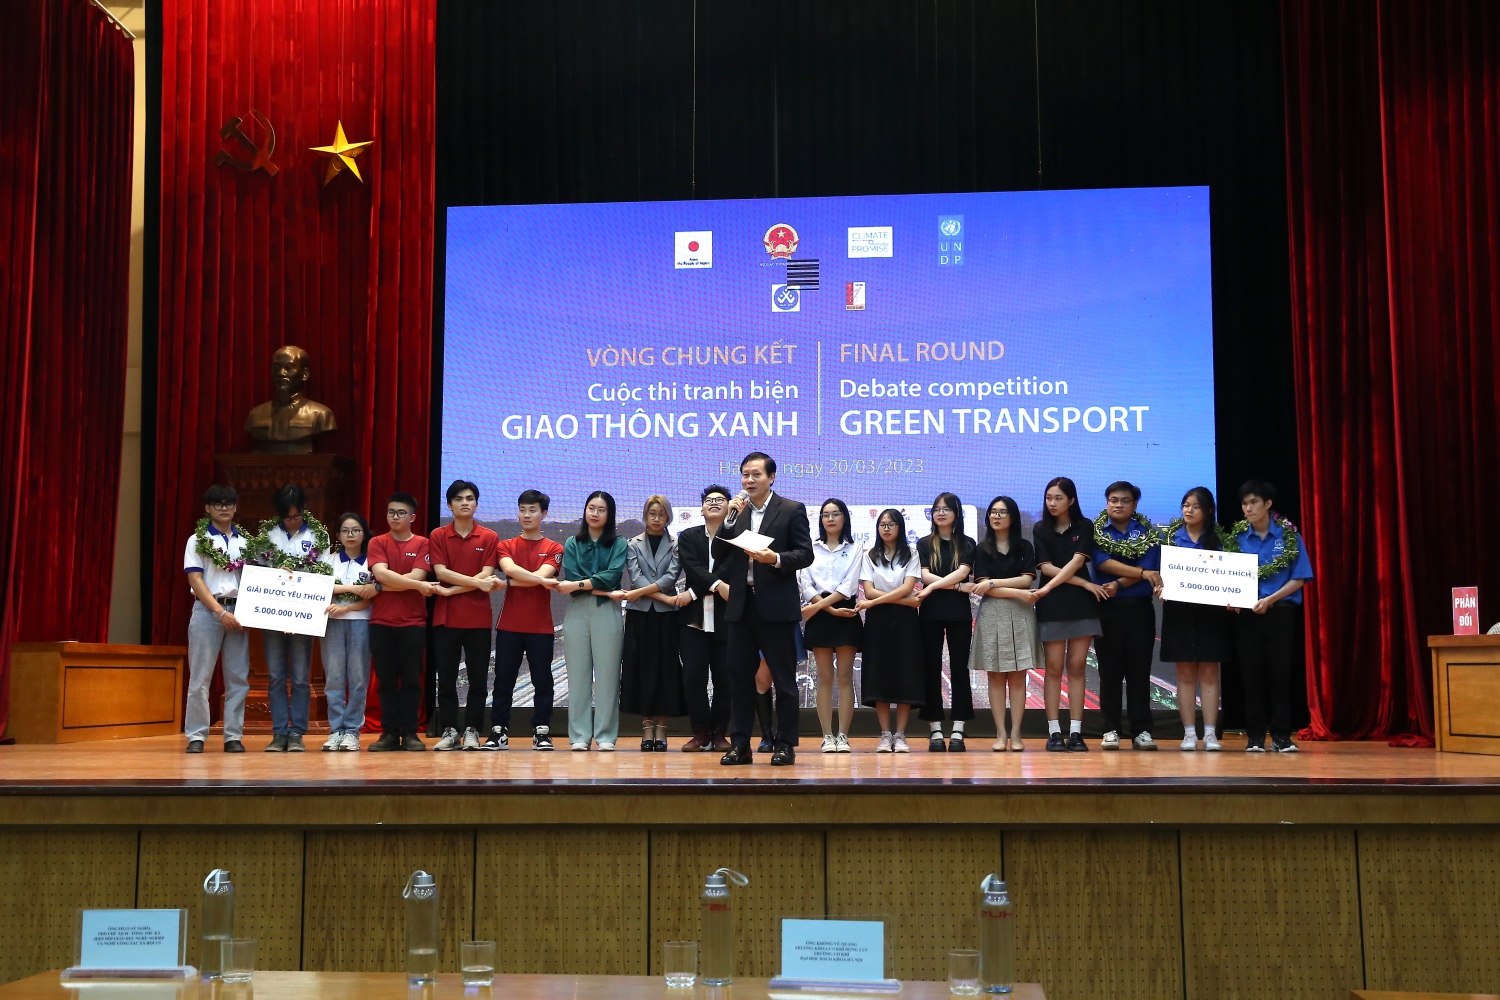 Đại học Bách Khoa Hà Nội giành giải Nhất Cuộc thi Tranh biện Giao thông Xanh